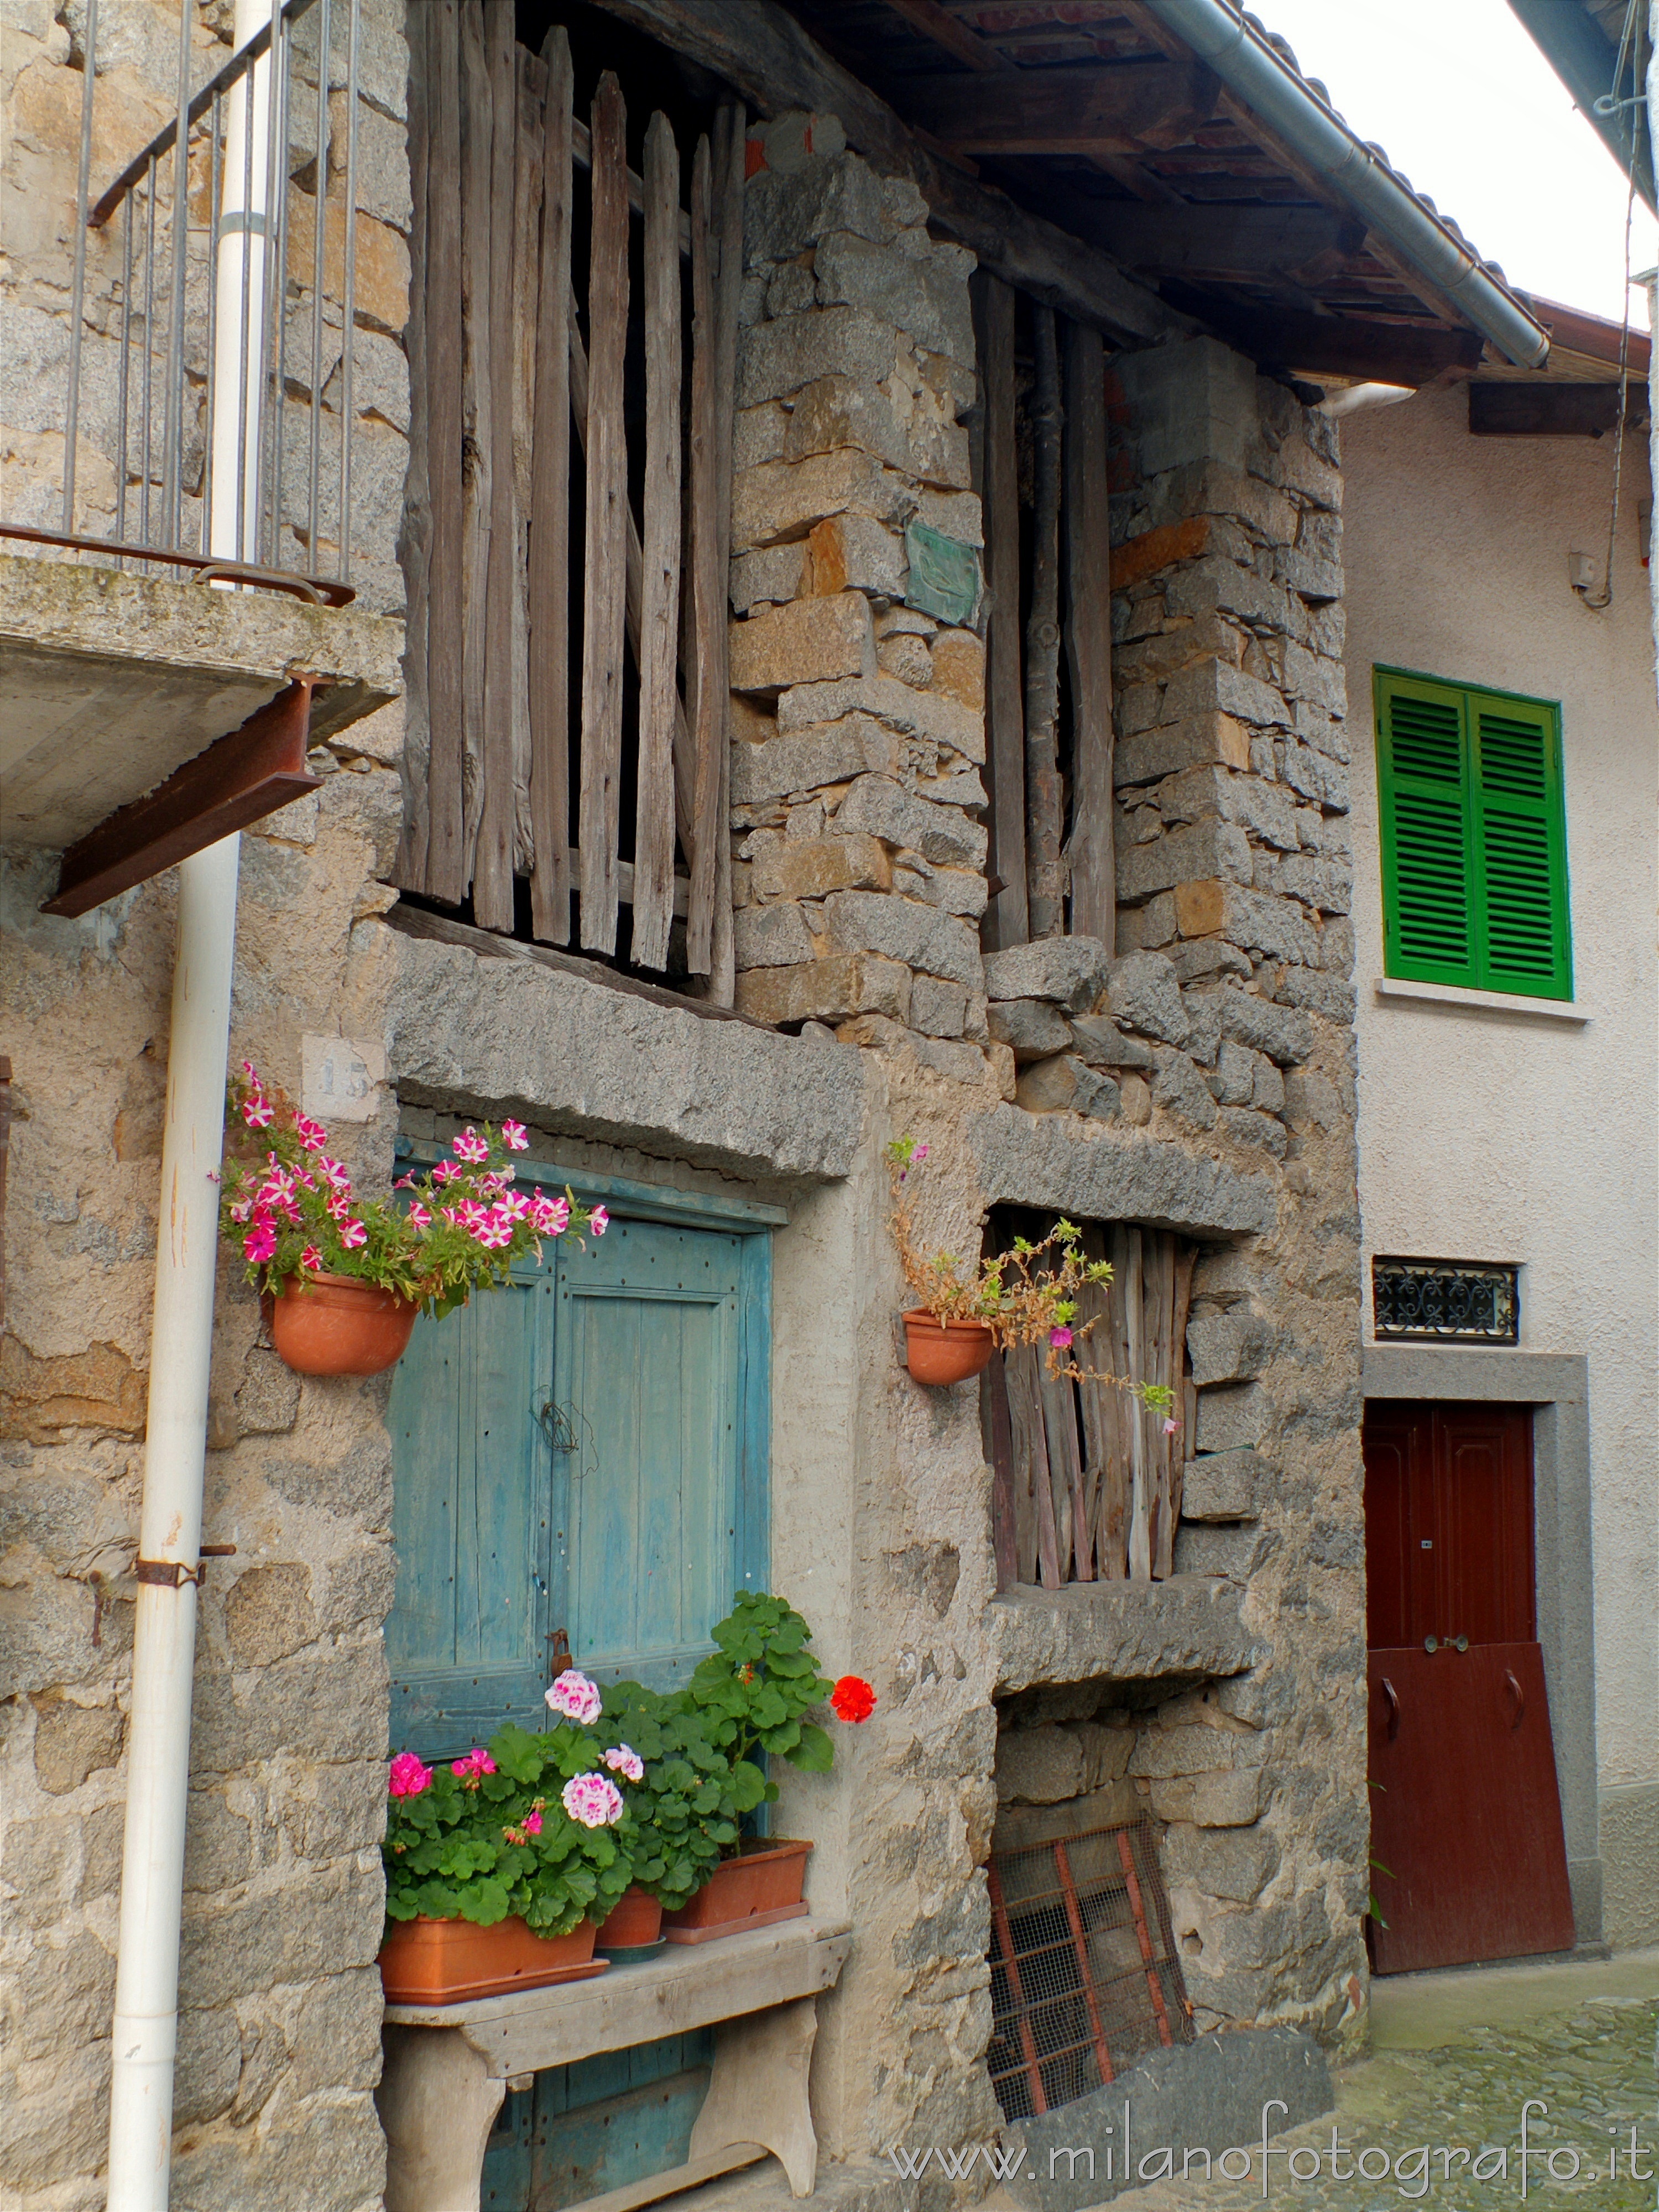 Driagno fraction of Campiglia Cervo (Biella, Italy): Old house with geraniums - Driagno fraction of Campiglia Cervo (Biella, Italy)